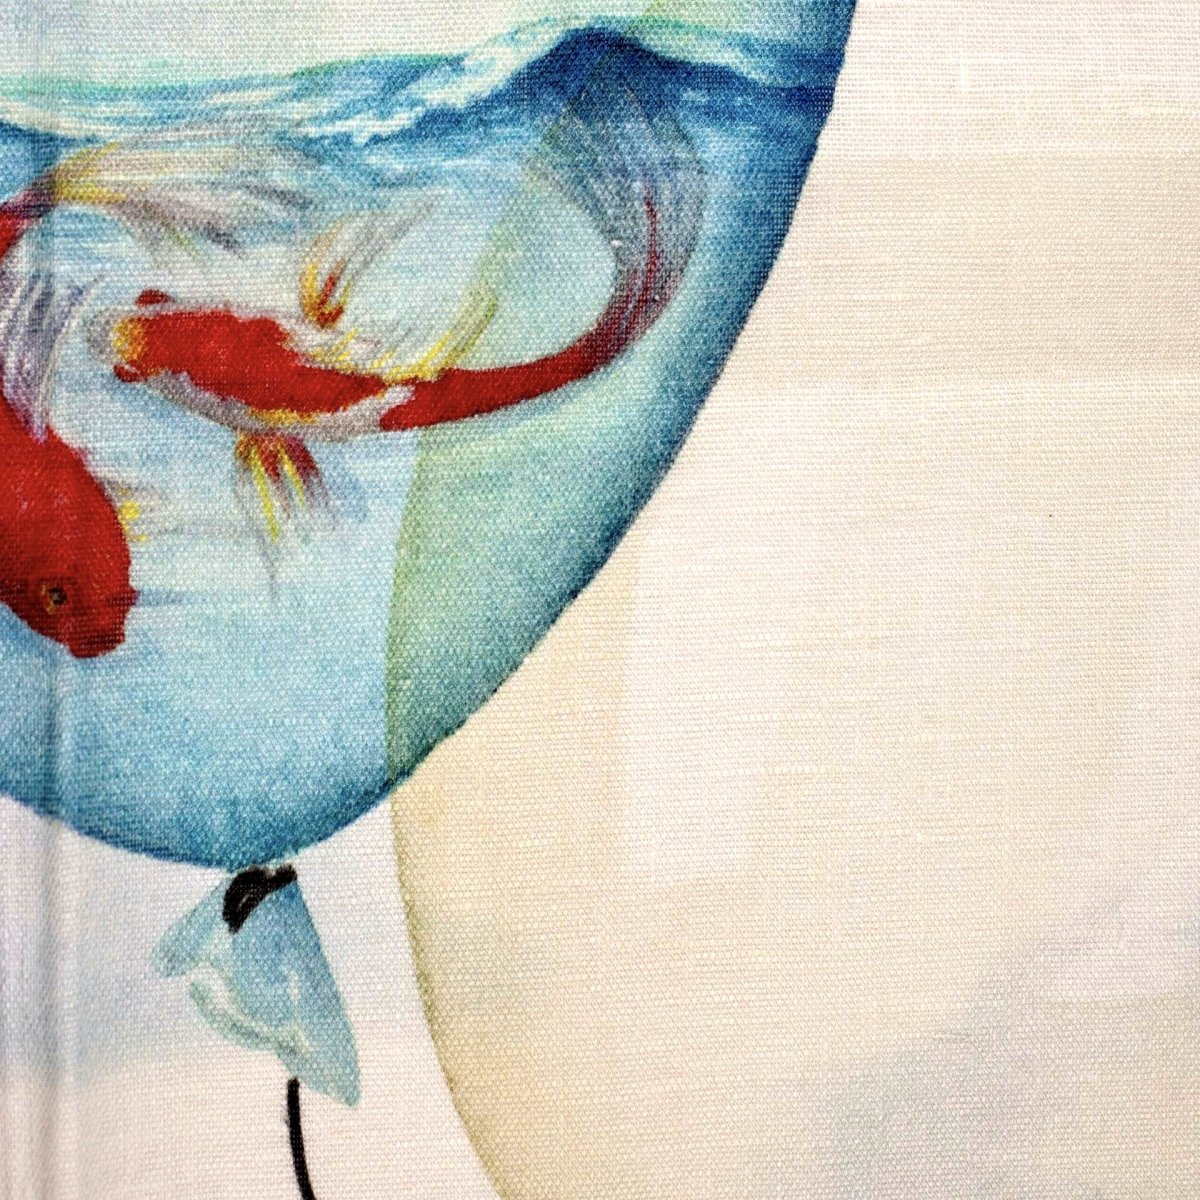 ''Balloons water' hør viskestykker' by Rune-Jakobsen Design. Explore our large selction of Viskestykker